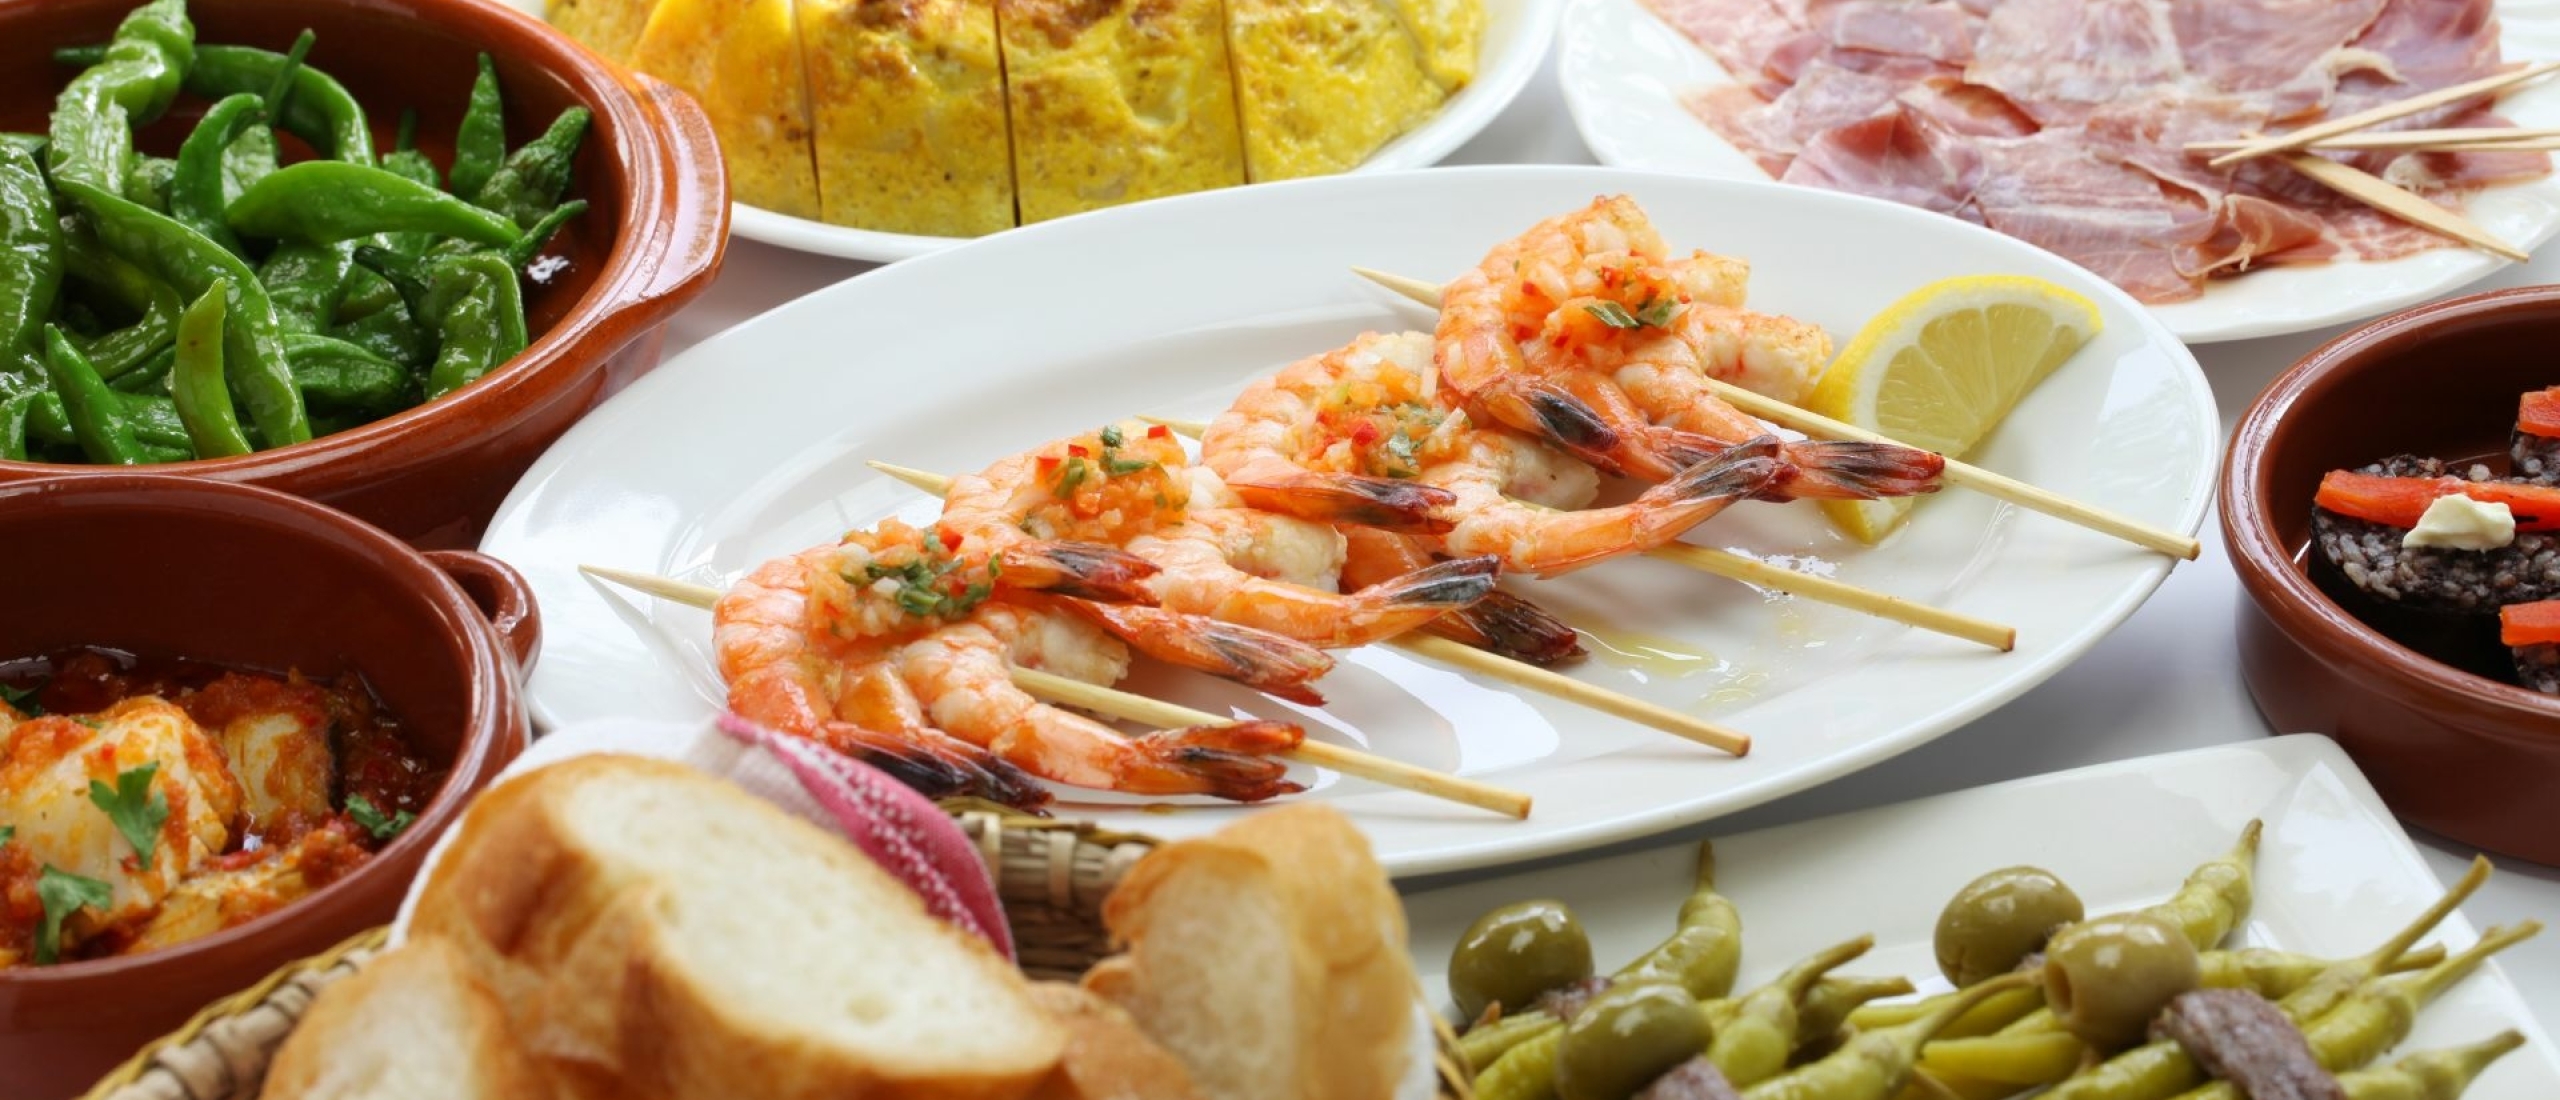 Gezonde restaurants in Malaga: Top 5 van een Voedingspecialist